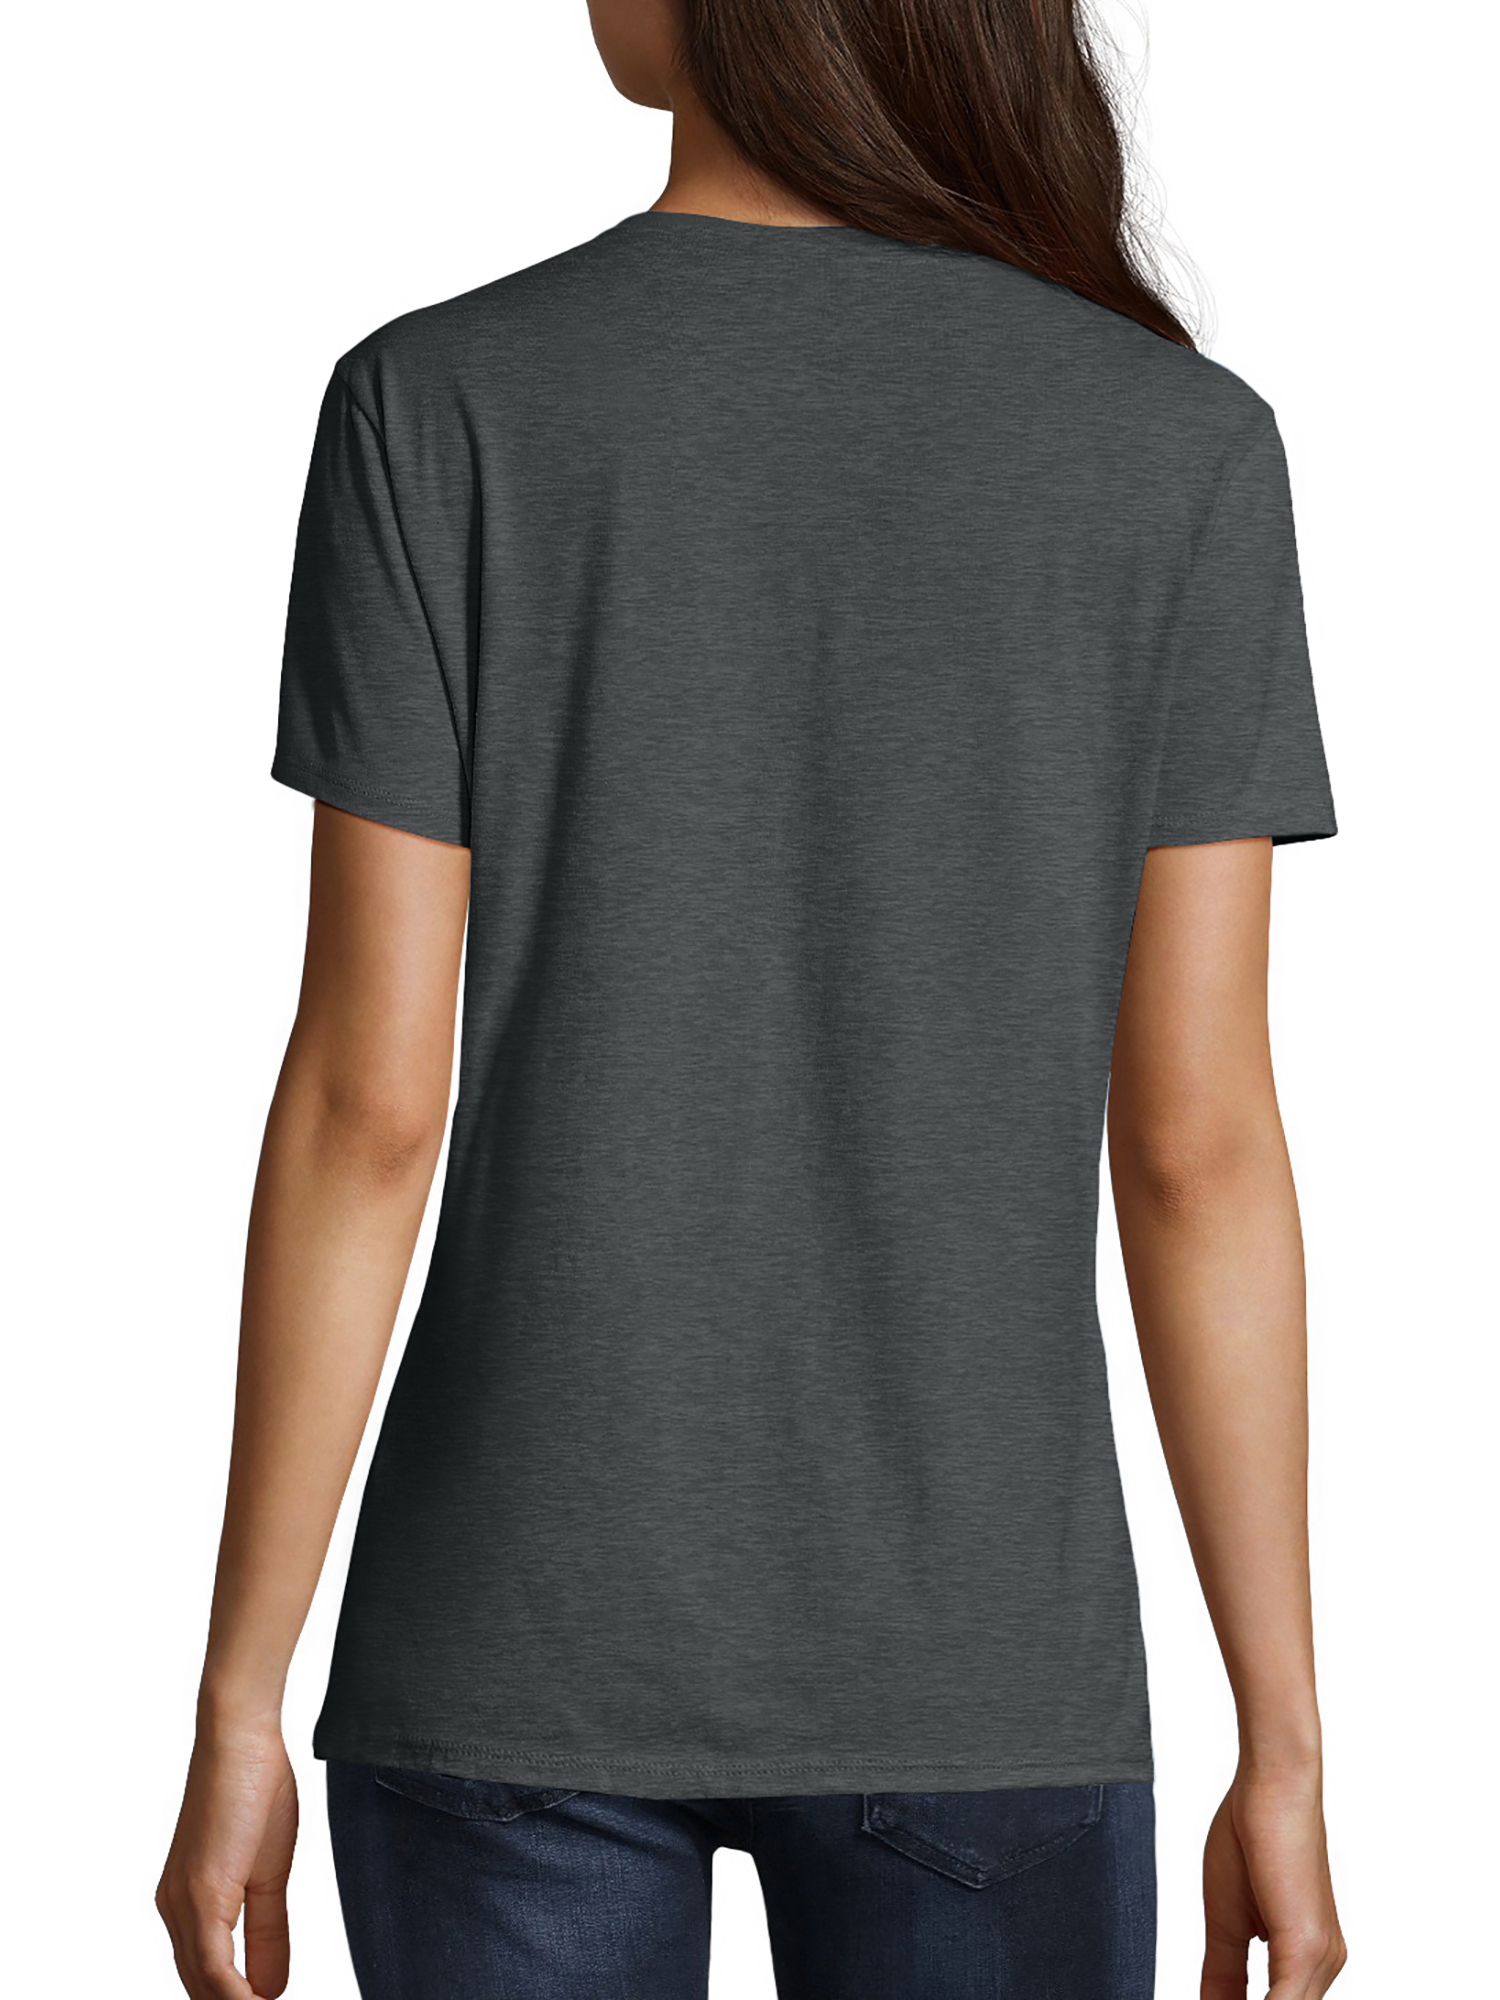 Hanes Women's Nano-T V-Neck T-Shirt - image 3 of 5